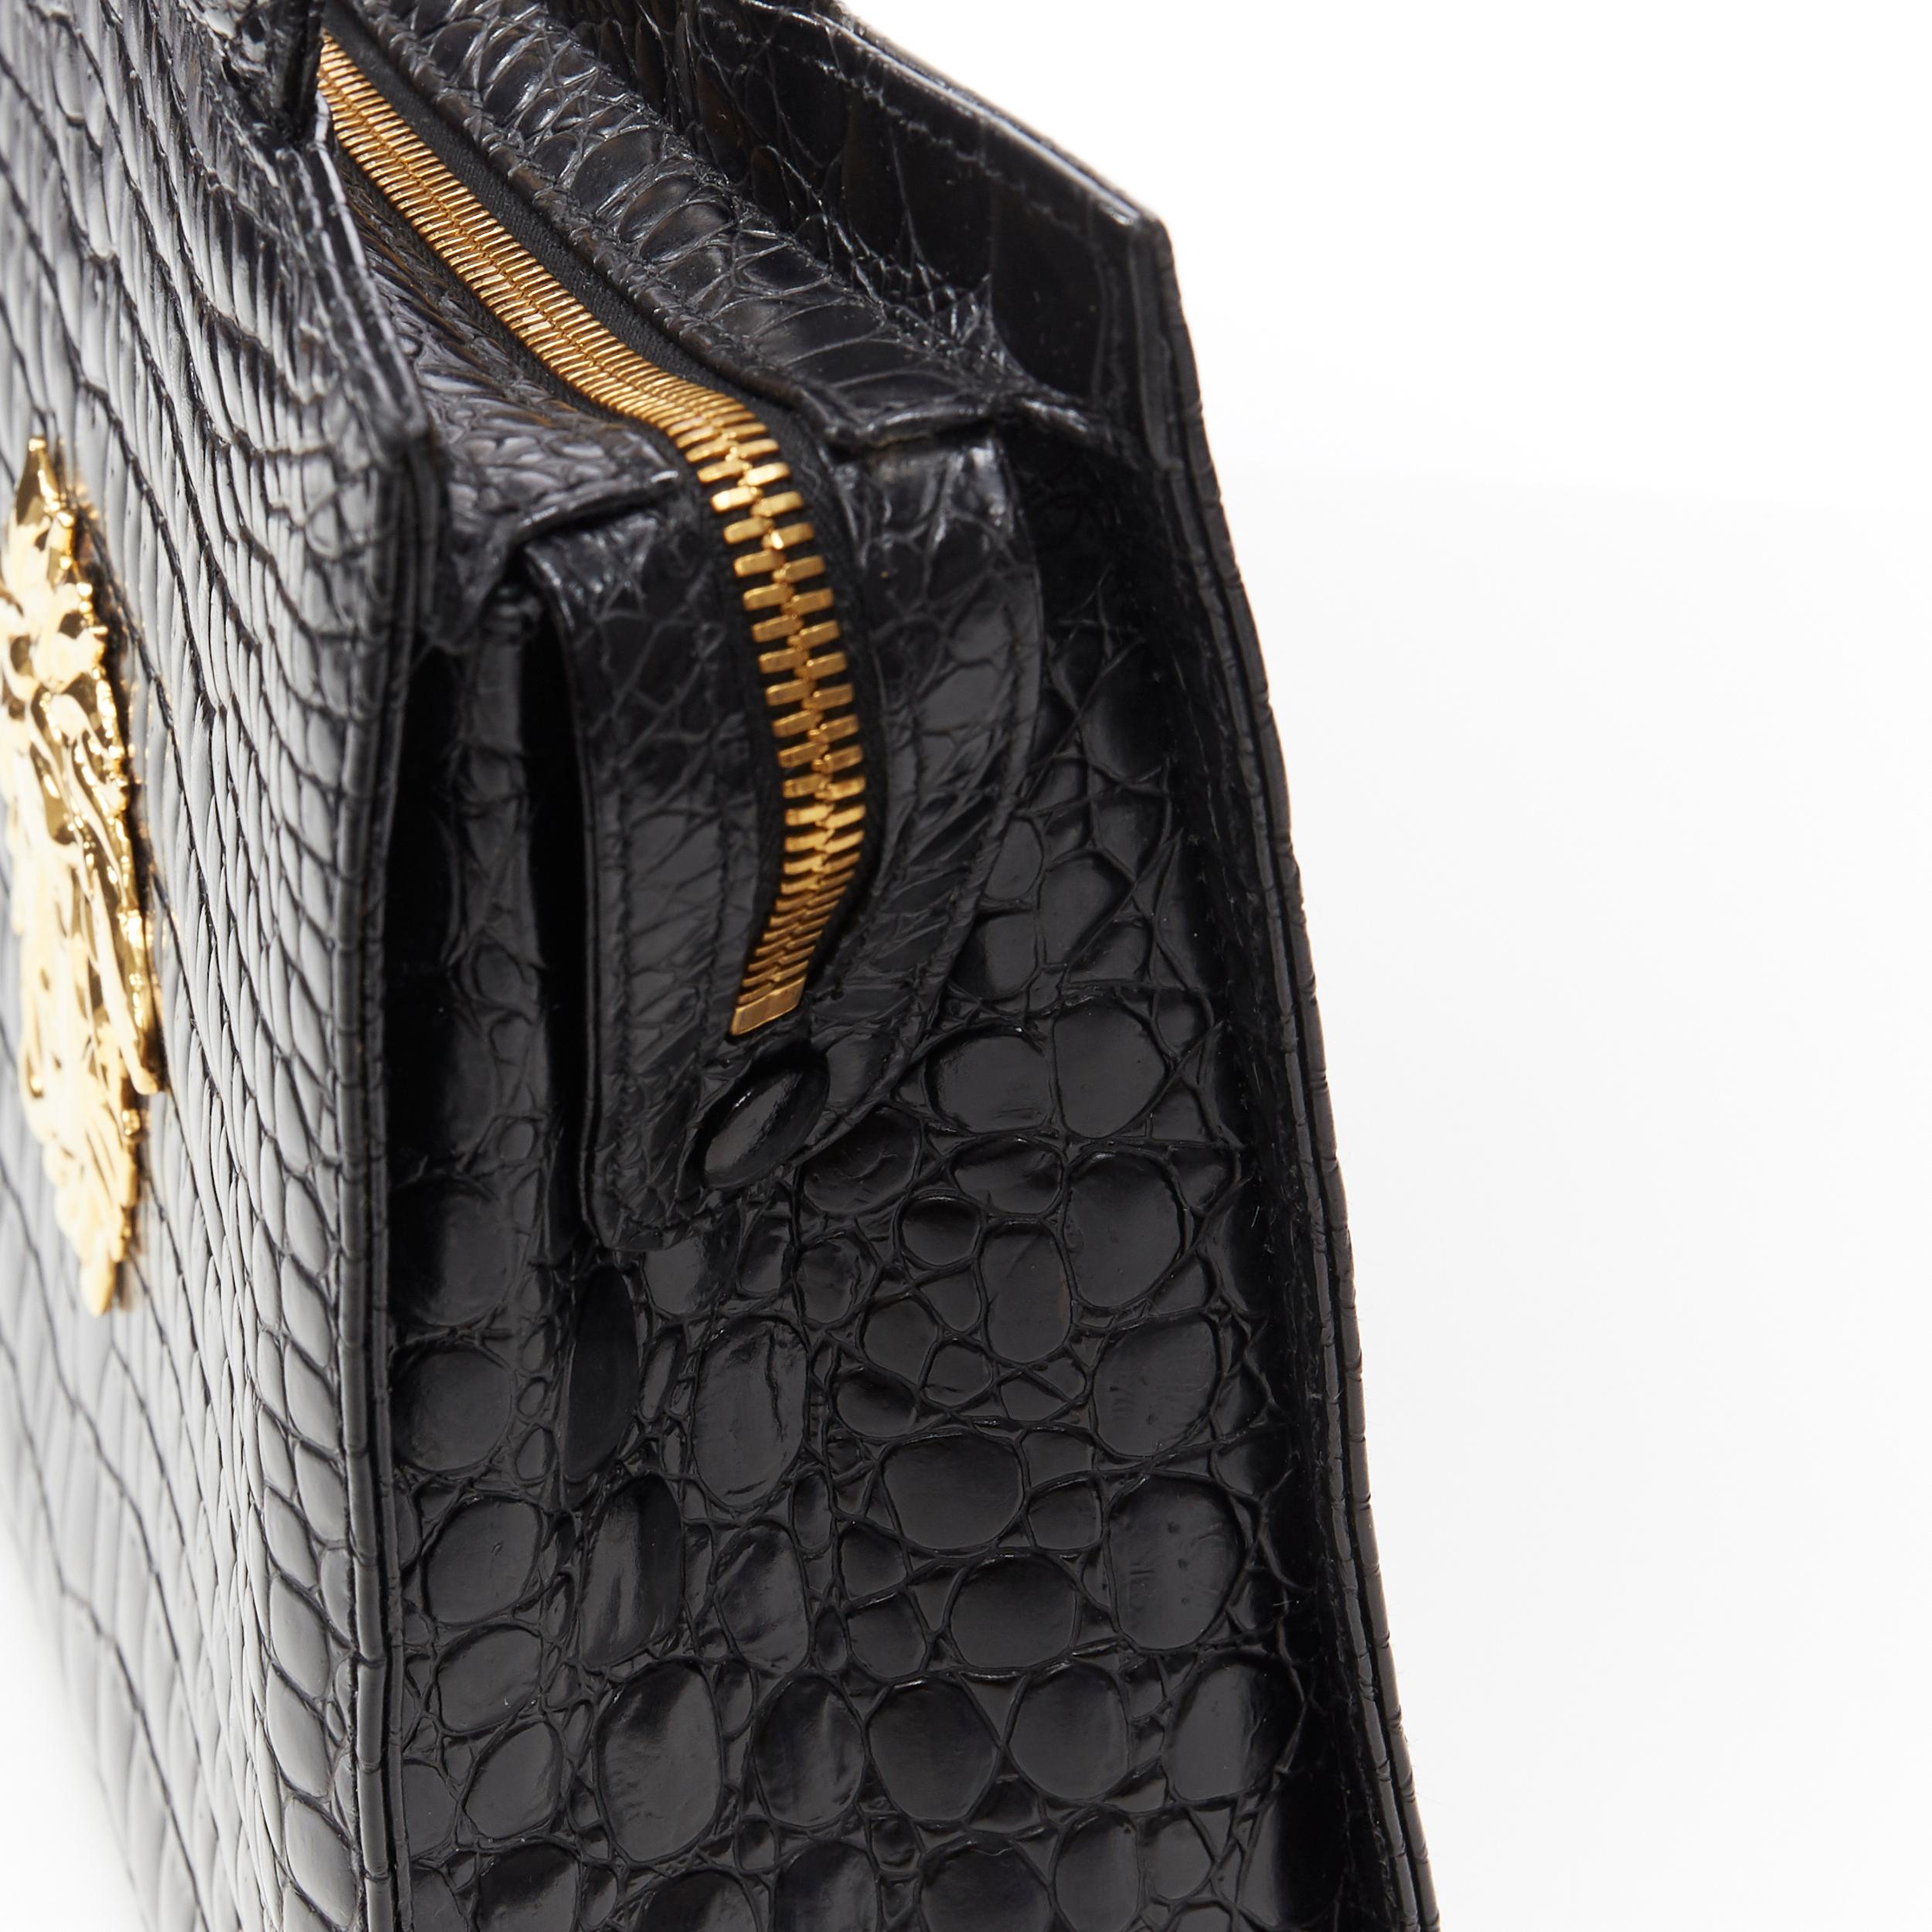 GIANNI VERSACE Vintage black mock croc gold Medusa Greca long shoulder strap bag 2